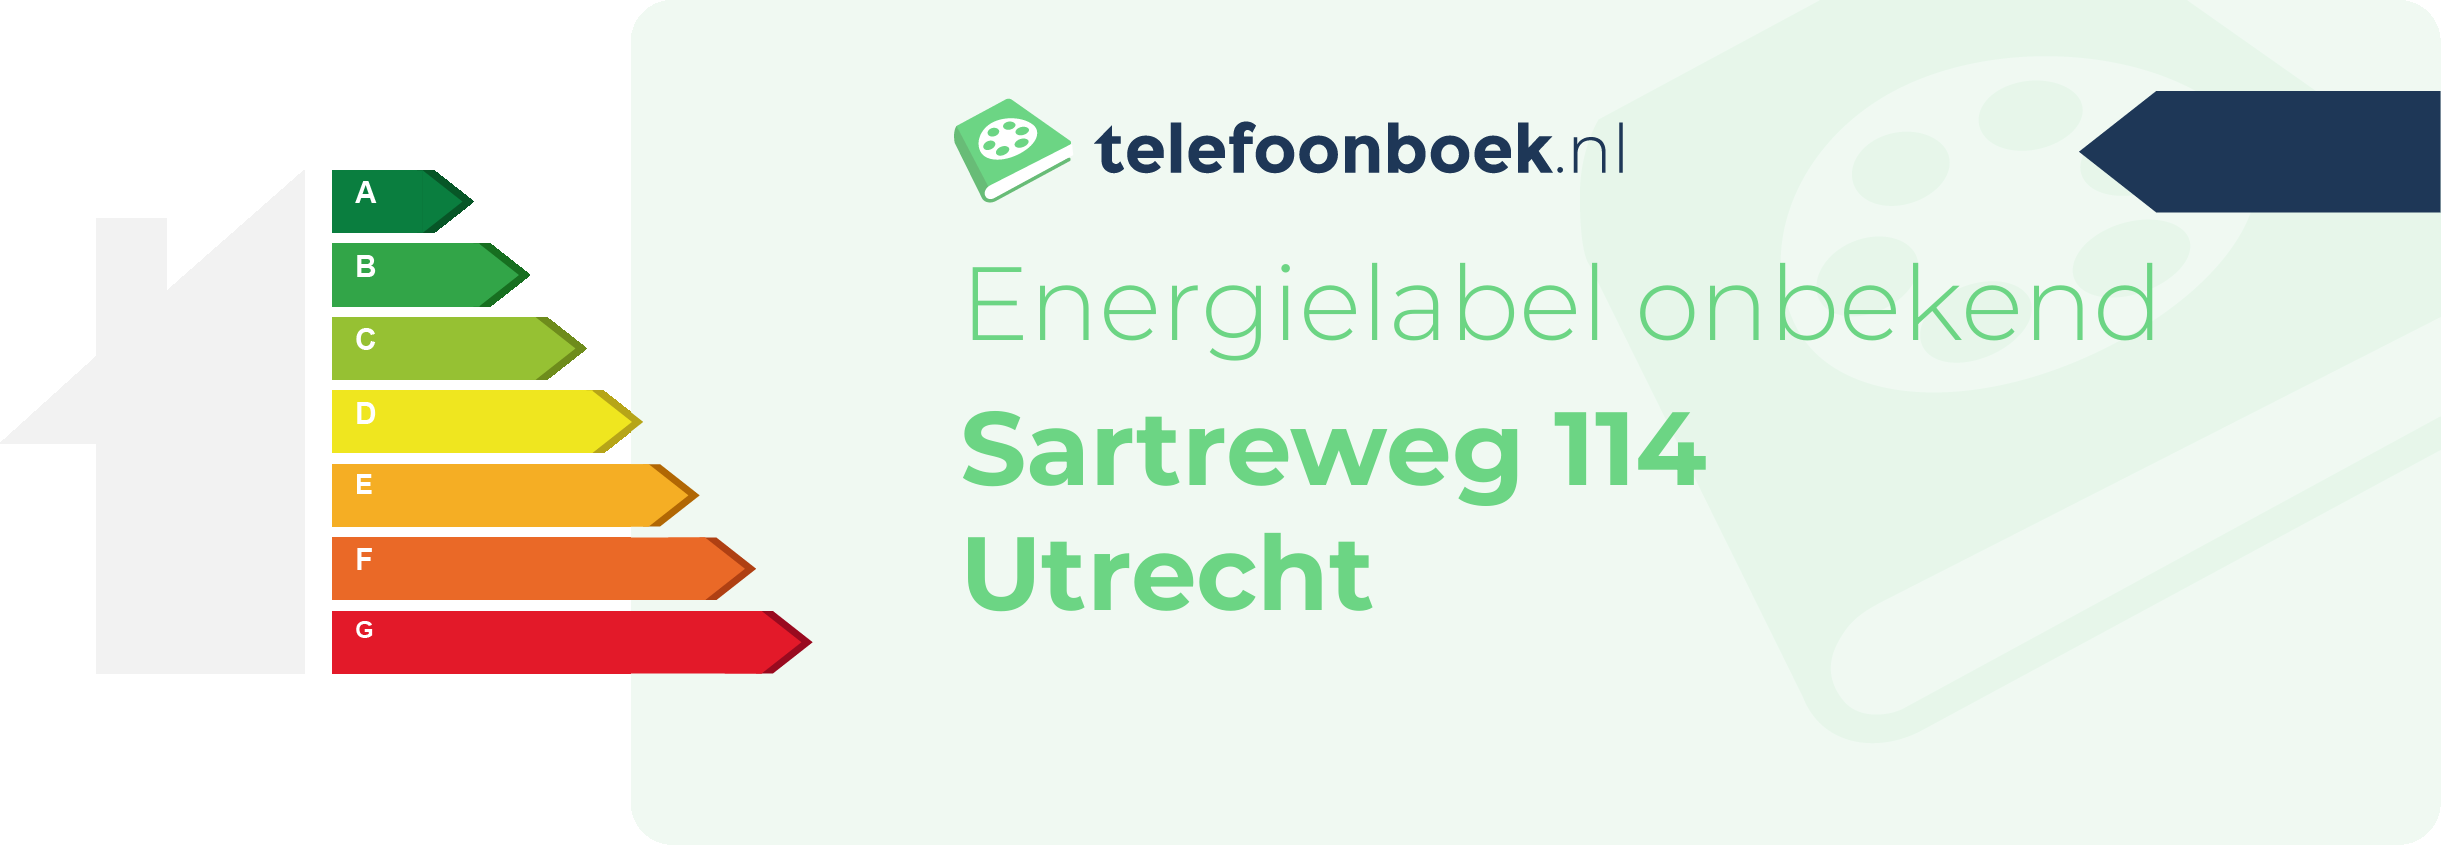 Energielabel Sartreweg 114 Utrecht